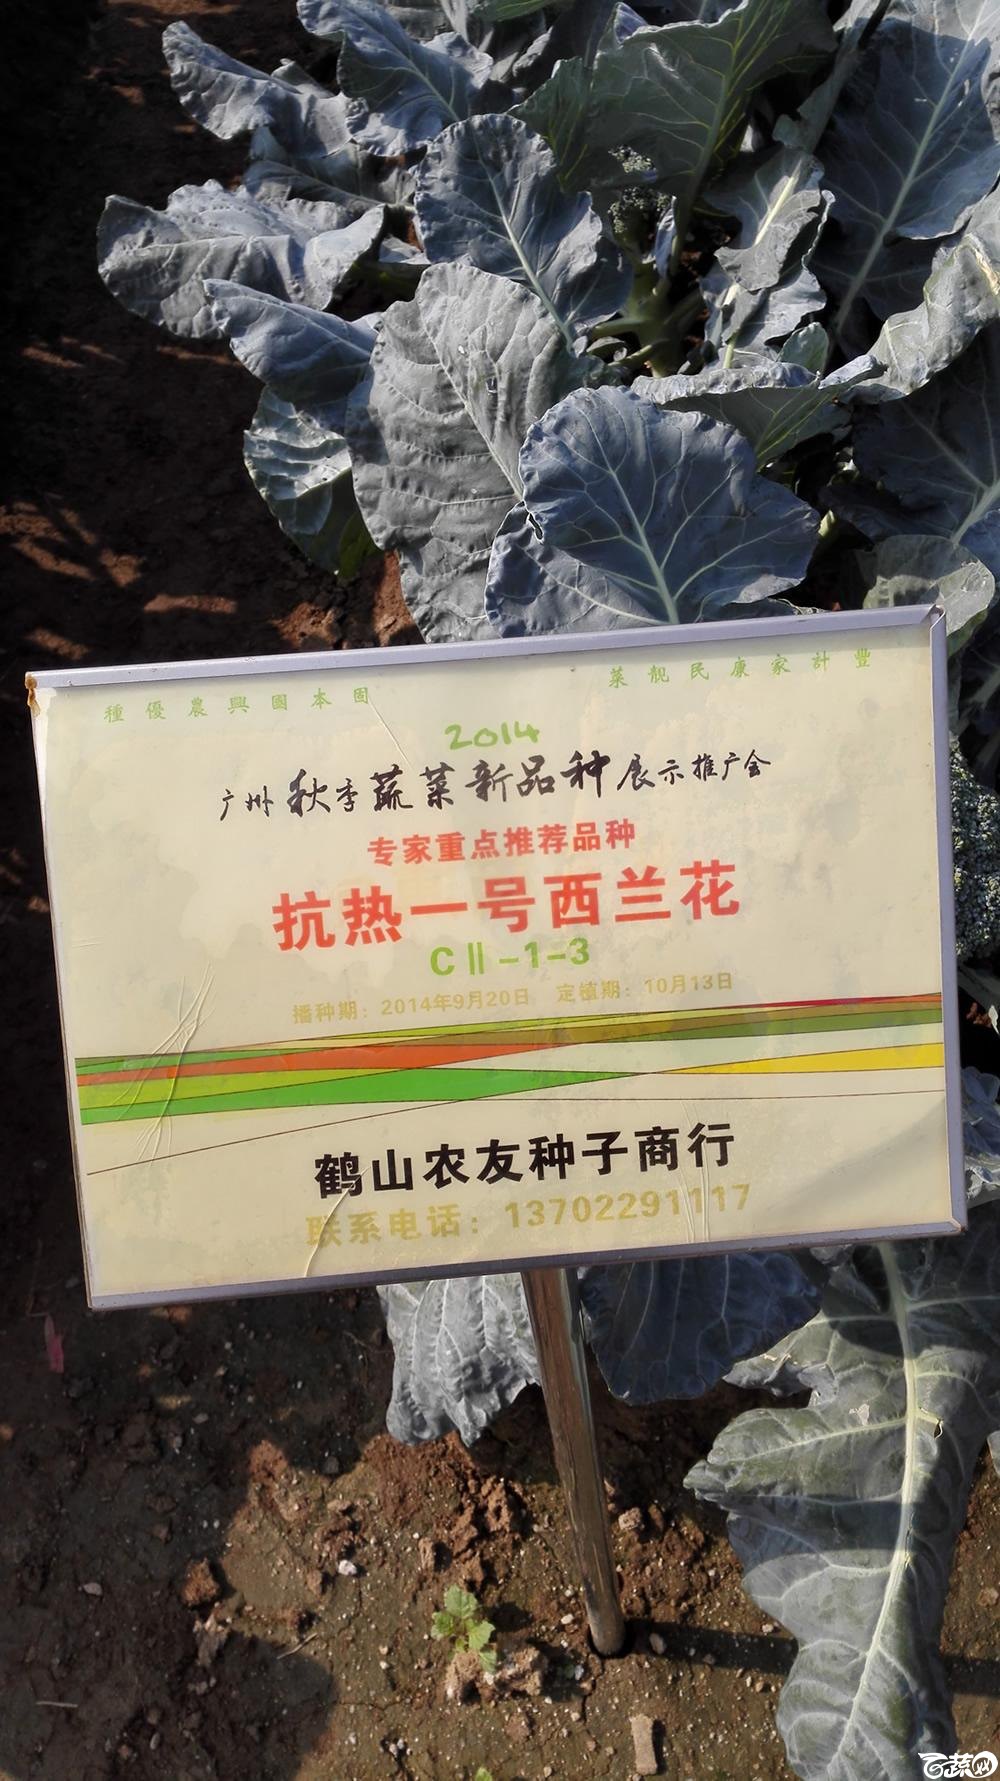 2014年12月10号广州市农科院南沙秋季蔬菜新品种展示会 甘蓝_009.jpg